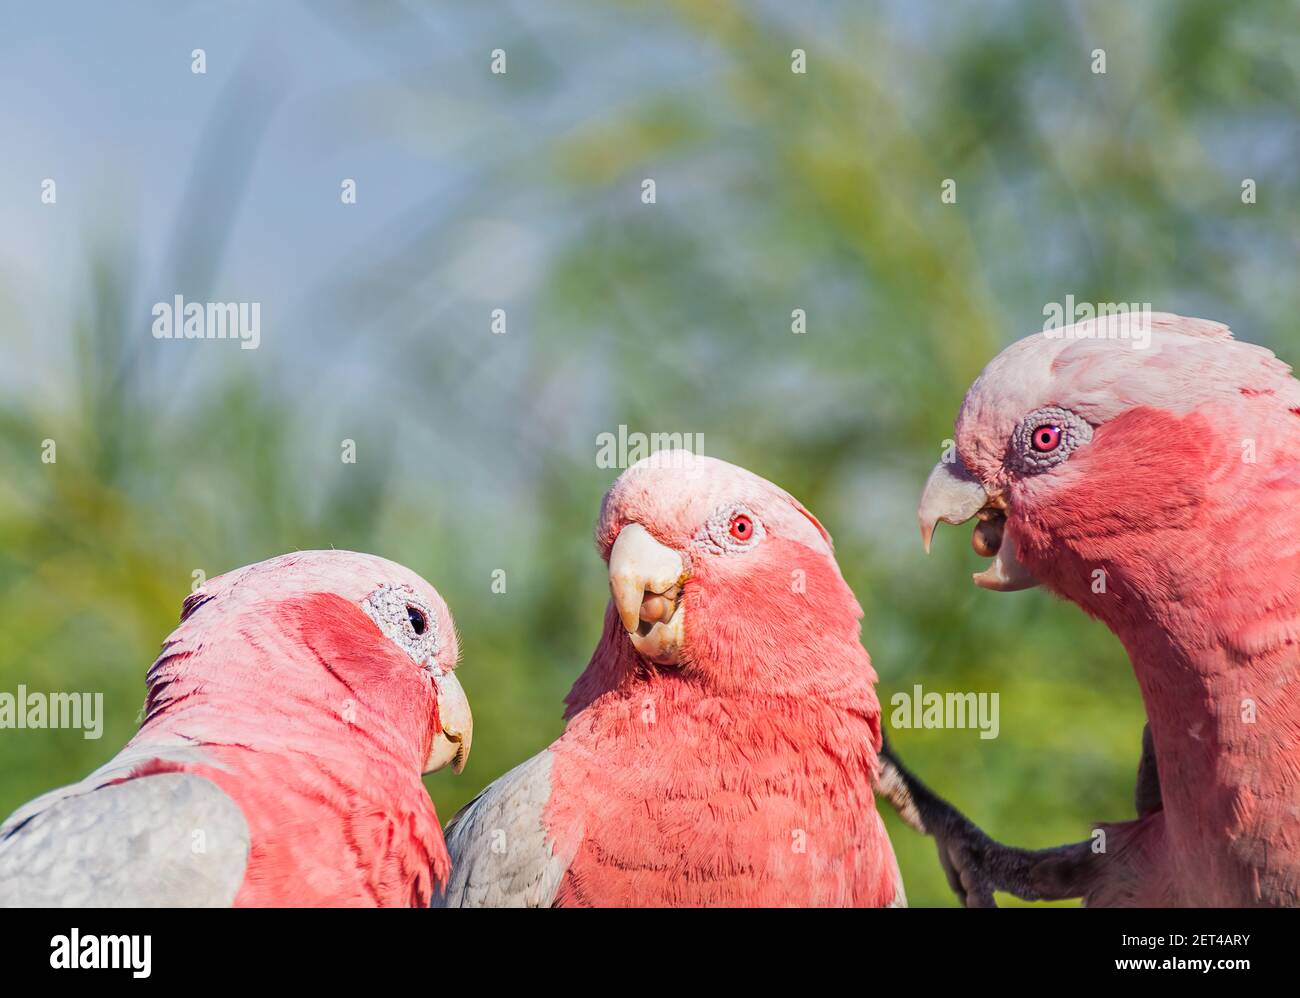 Tre uccelli di galah in un albero che si guardano l'un l'altro, Australia Foto Stock